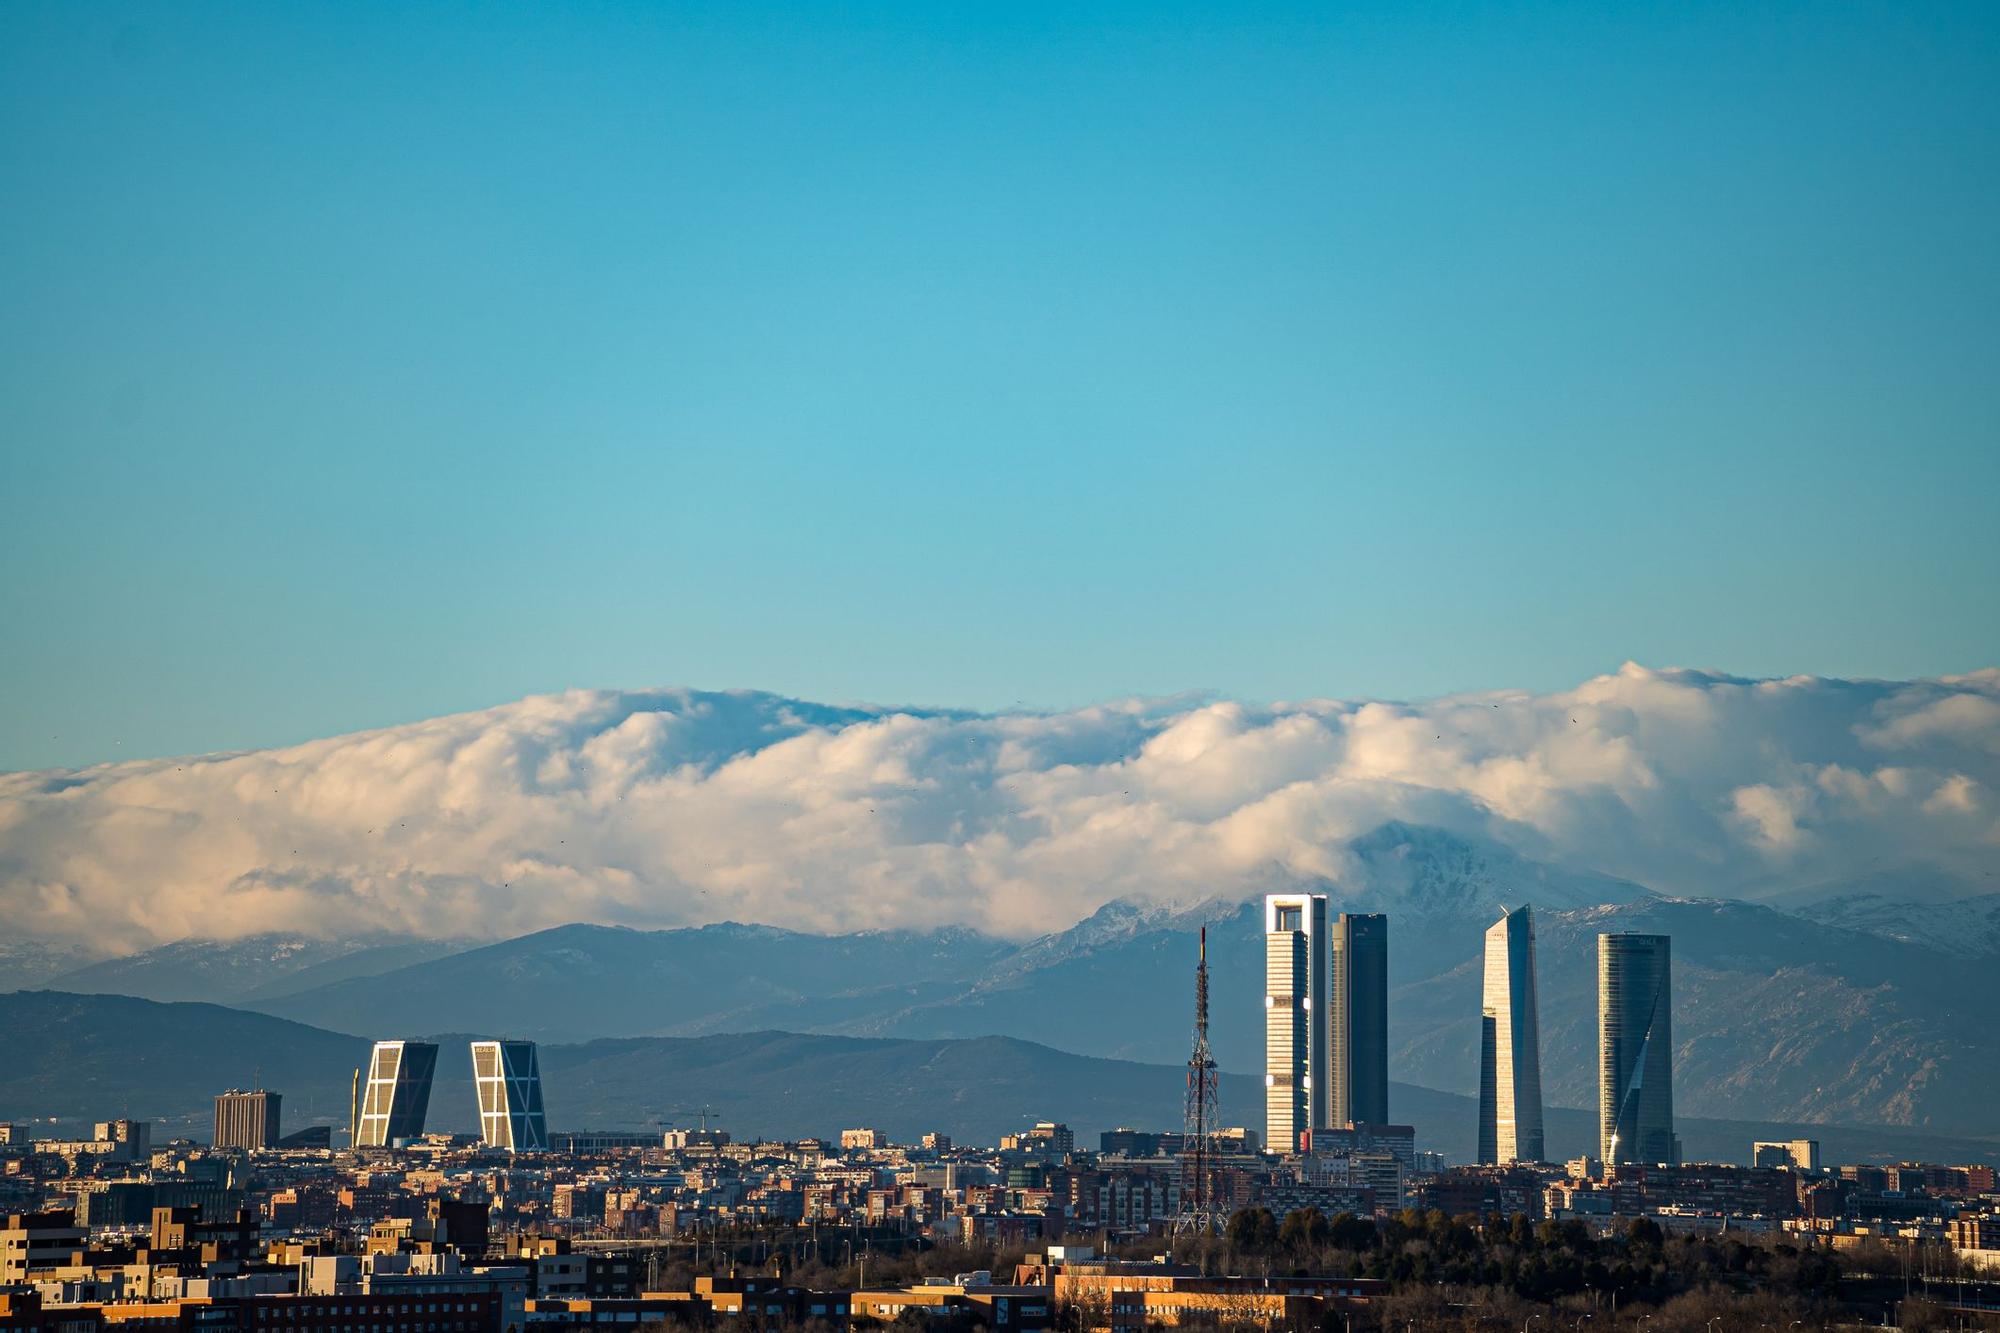 El actual skyline de Madrid está presidido por las características torres